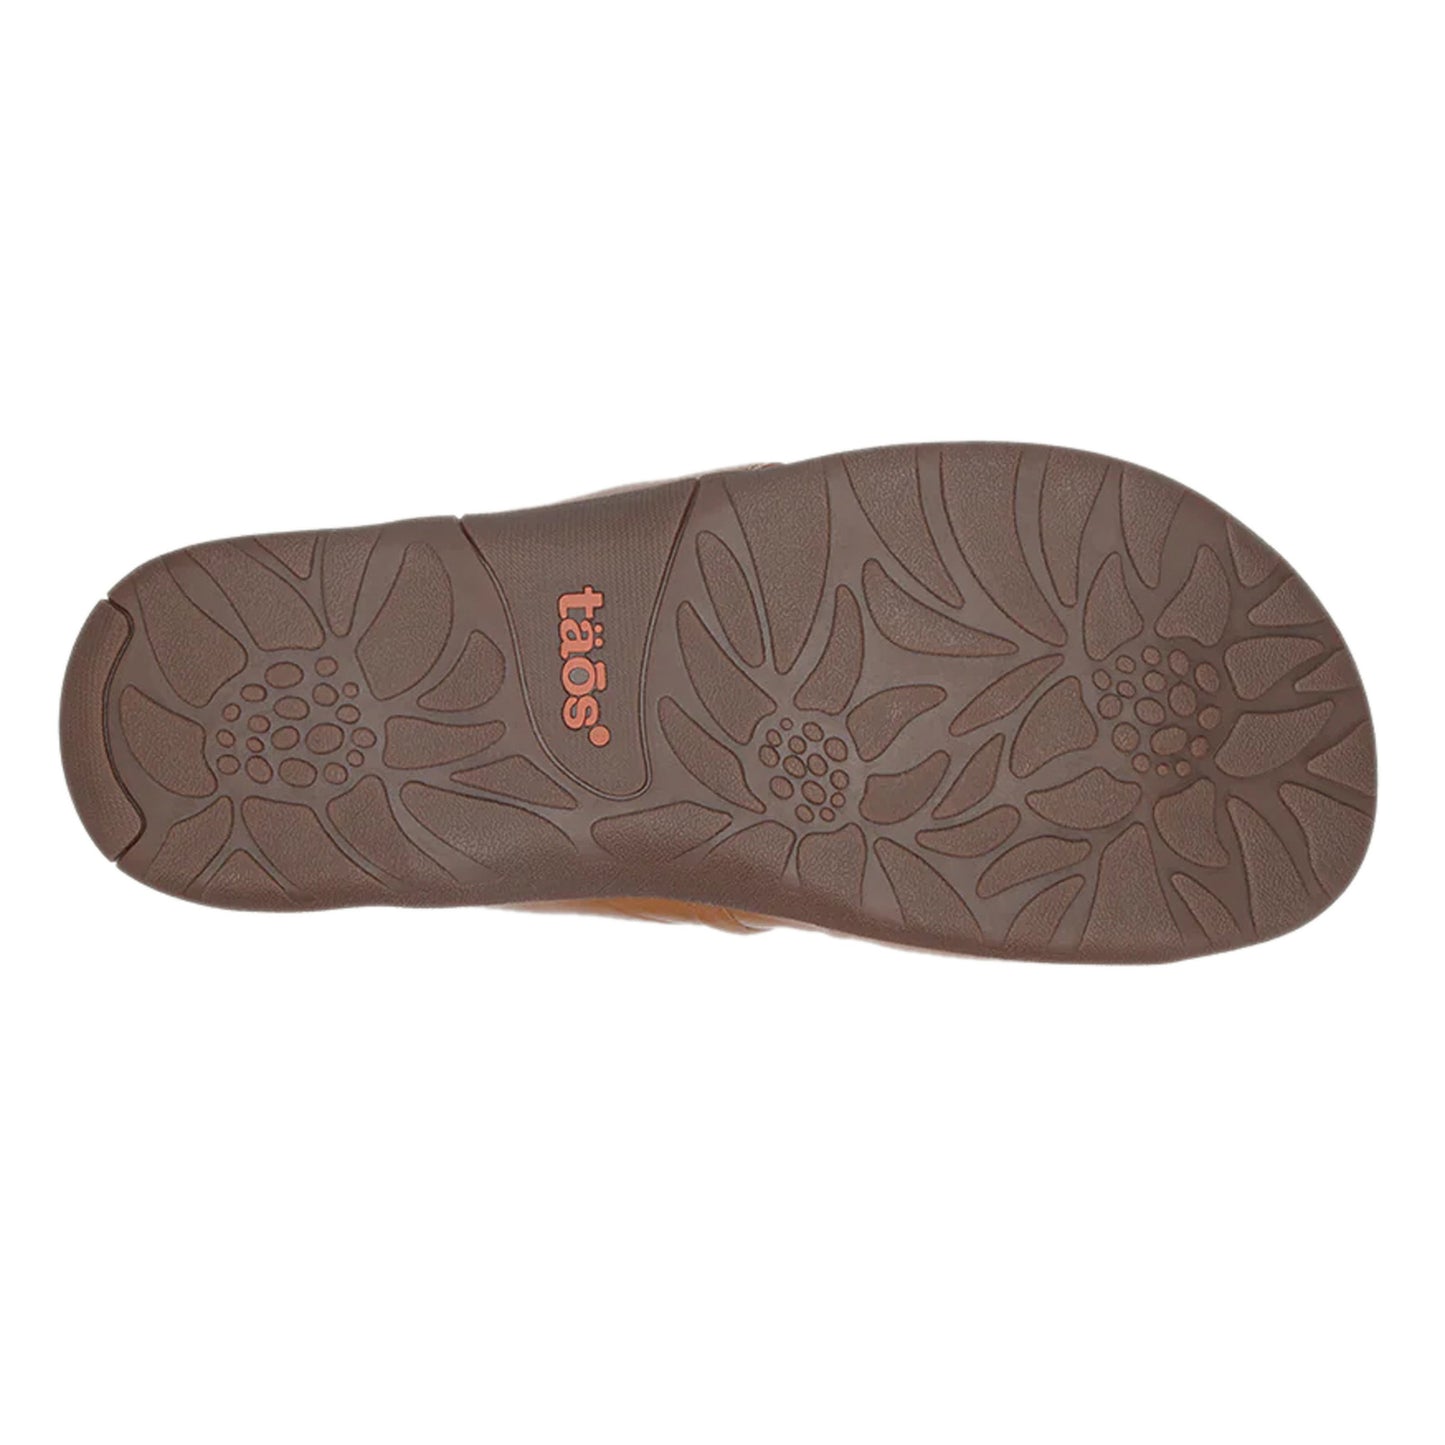 Peltz Shoes  Women's Taos Gift 2 Sandal Tan GT2-12045-TAN